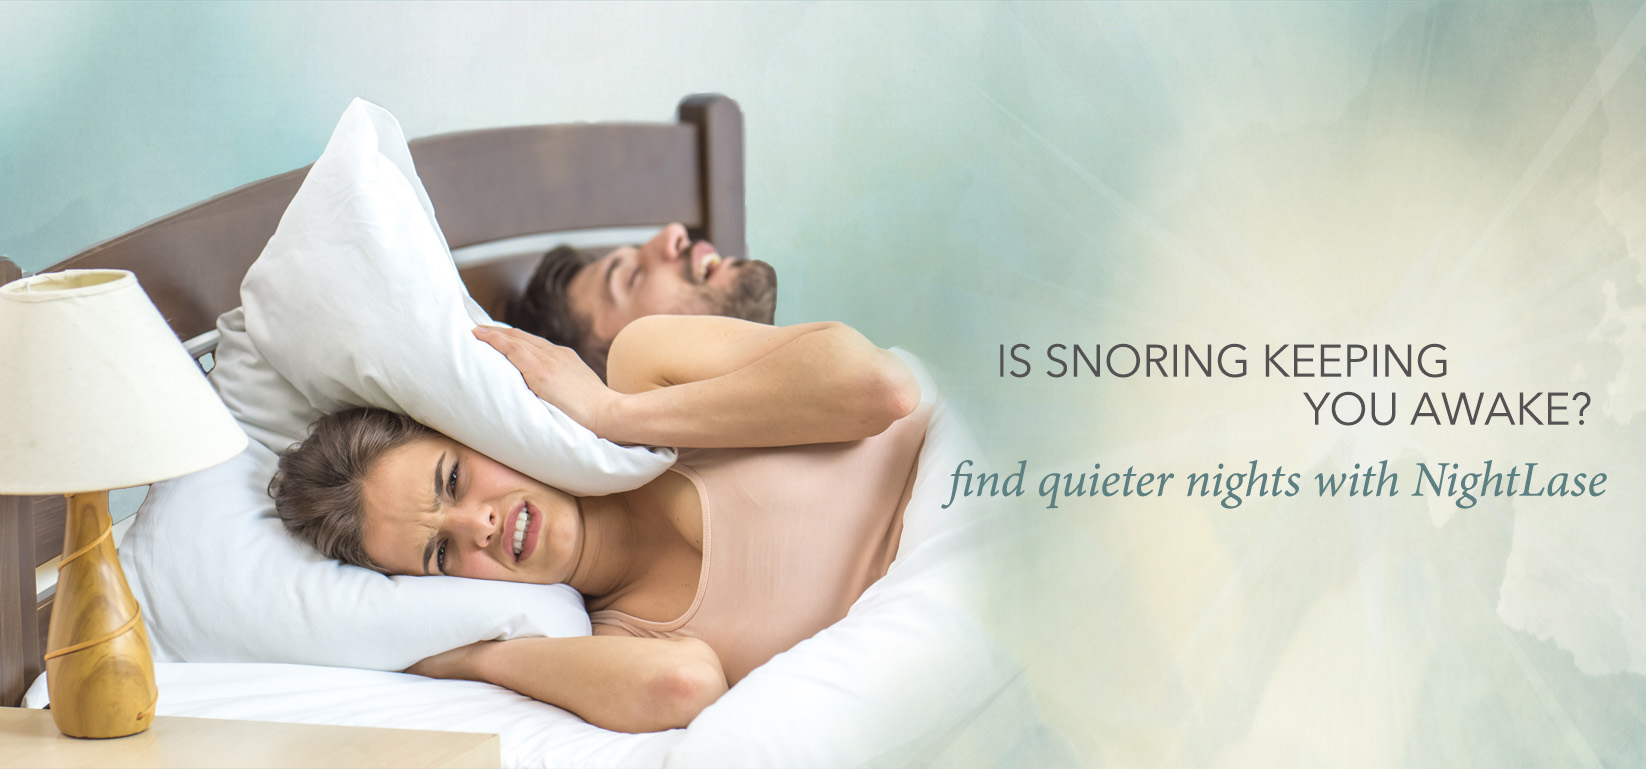 Snoring keeping you awake? Find quieter nights with NightLase